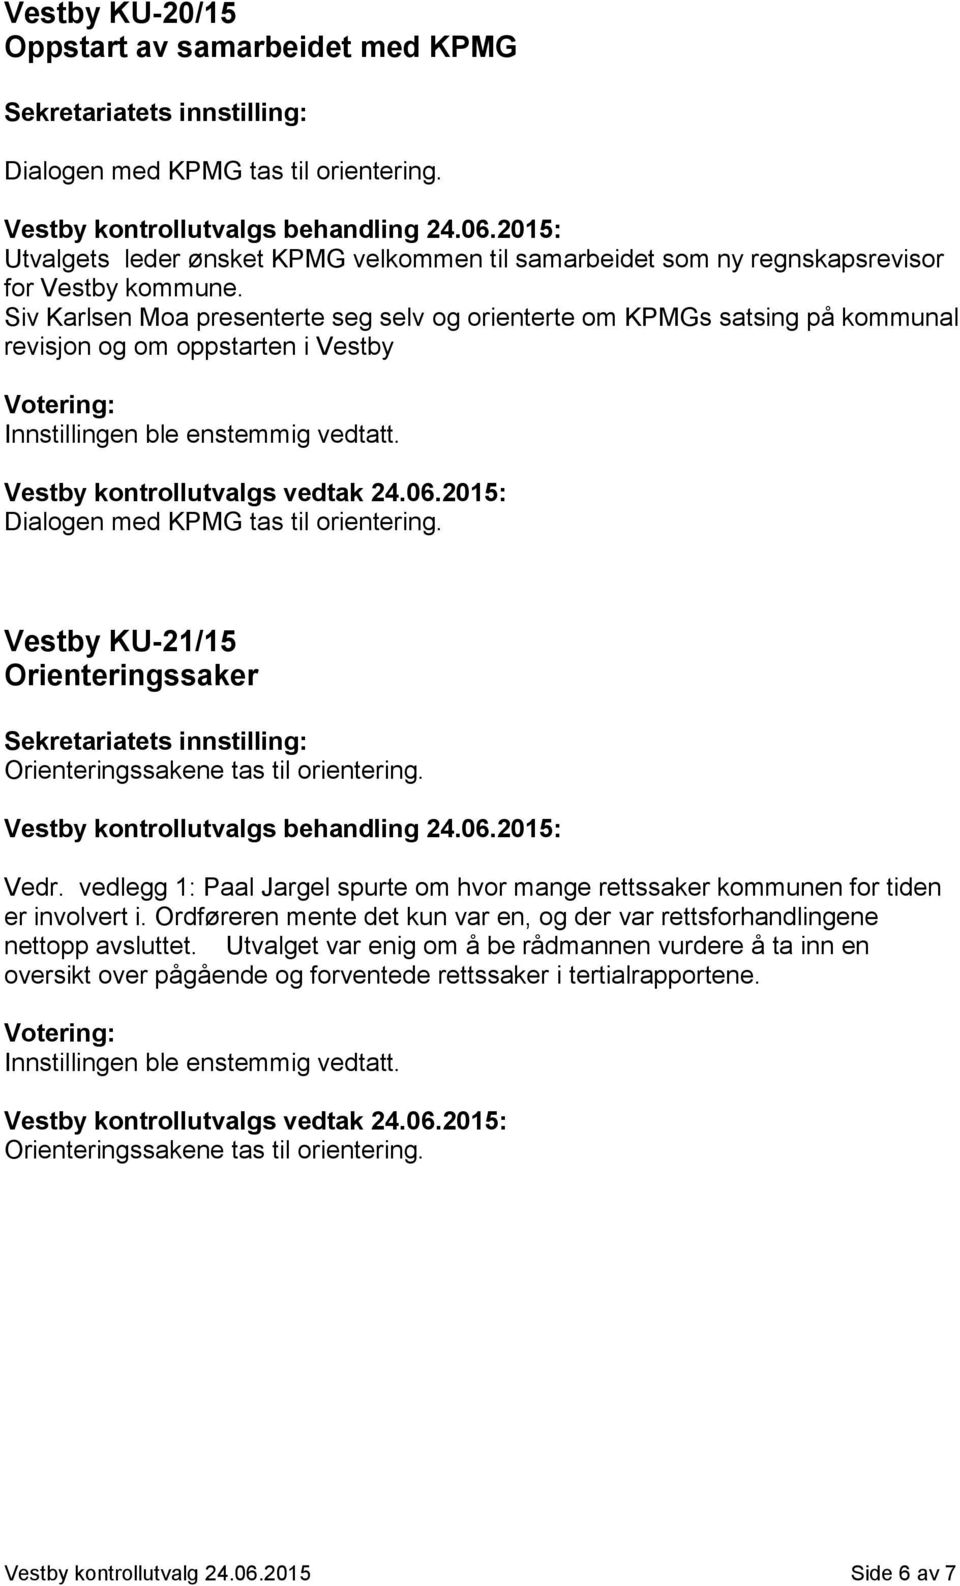 Vestby KU-21/15 Orienteringssaker Orienteringssakene tas til orientering. Vedr. vedlegg 1: Paal Jargel spurte om hvor mange rettssaker kommunen for tiden er involvert i.